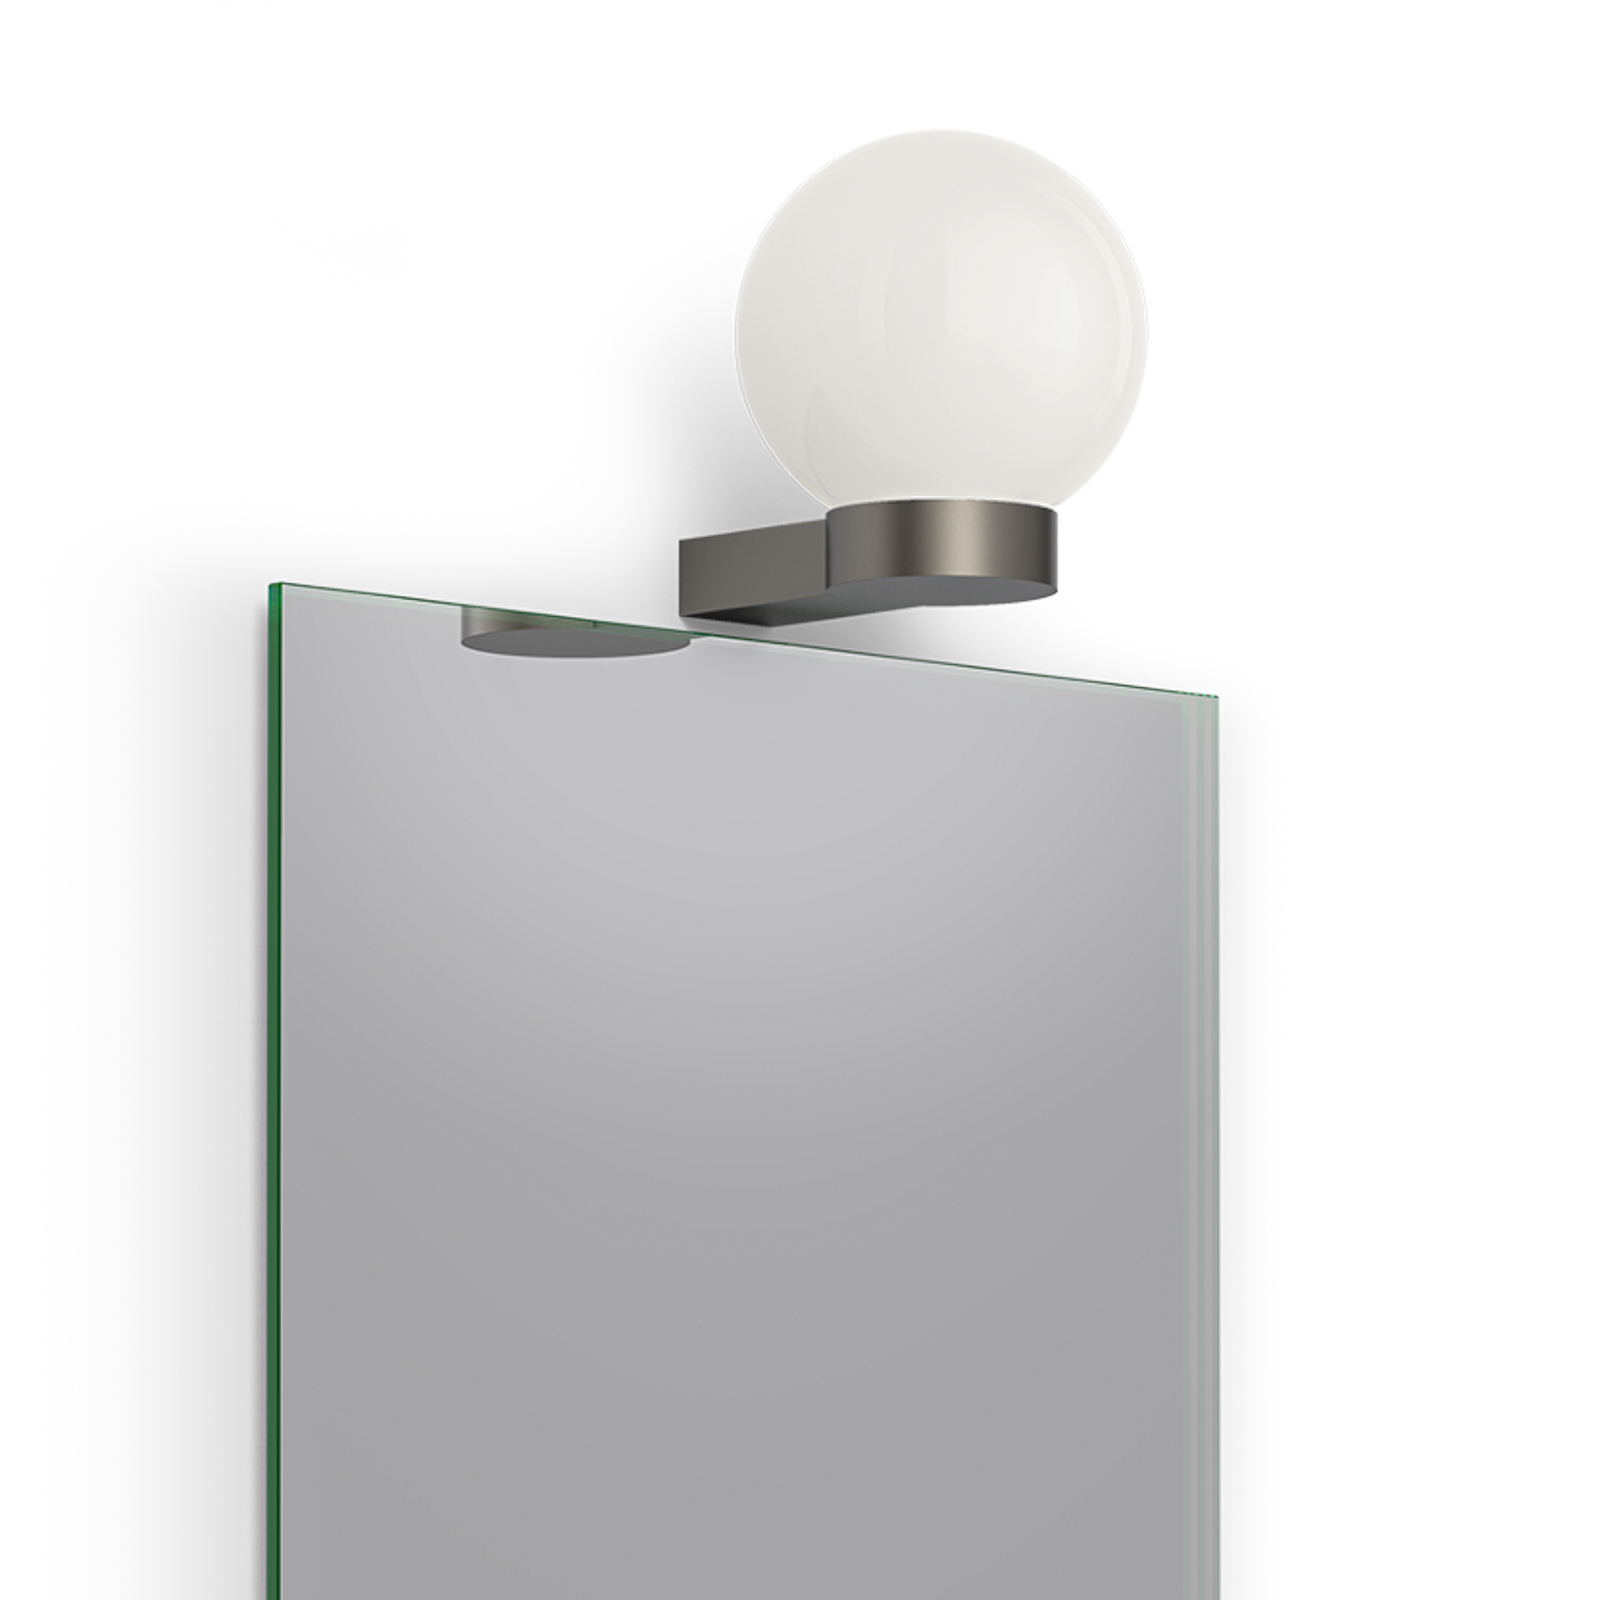 Decor Walther Bar Light wall lamp, metallic matt